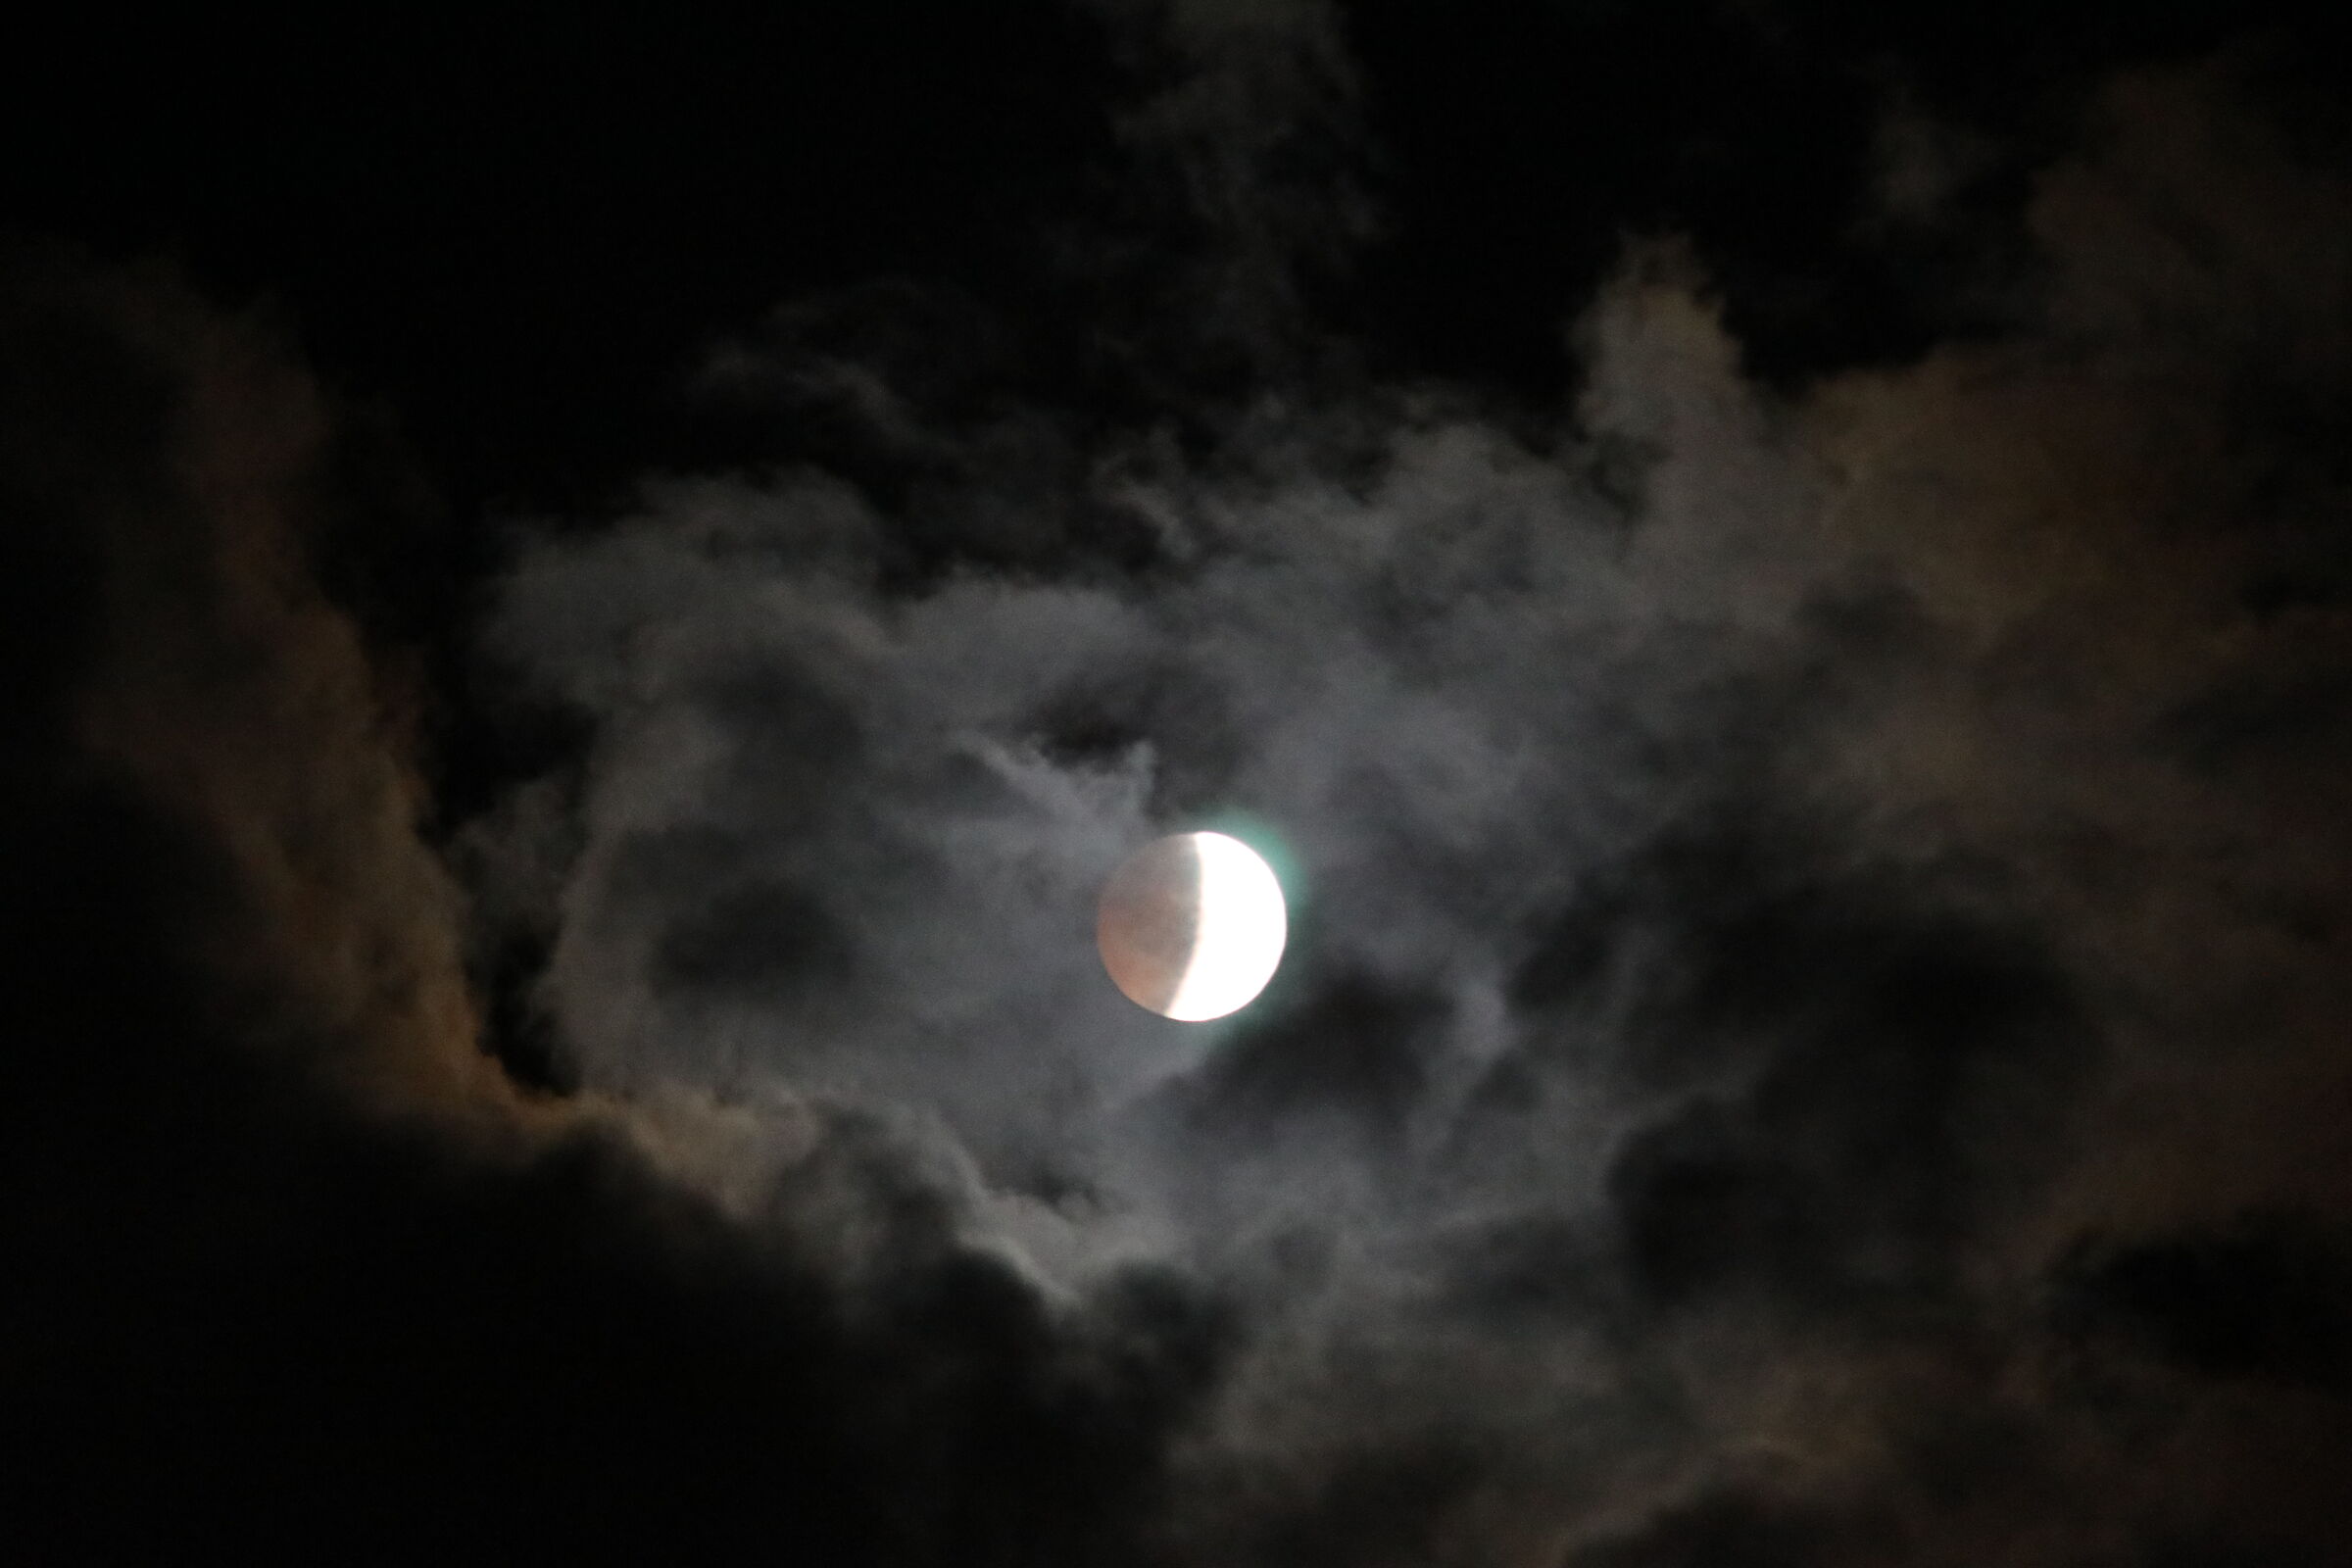 Lunar eclipse...